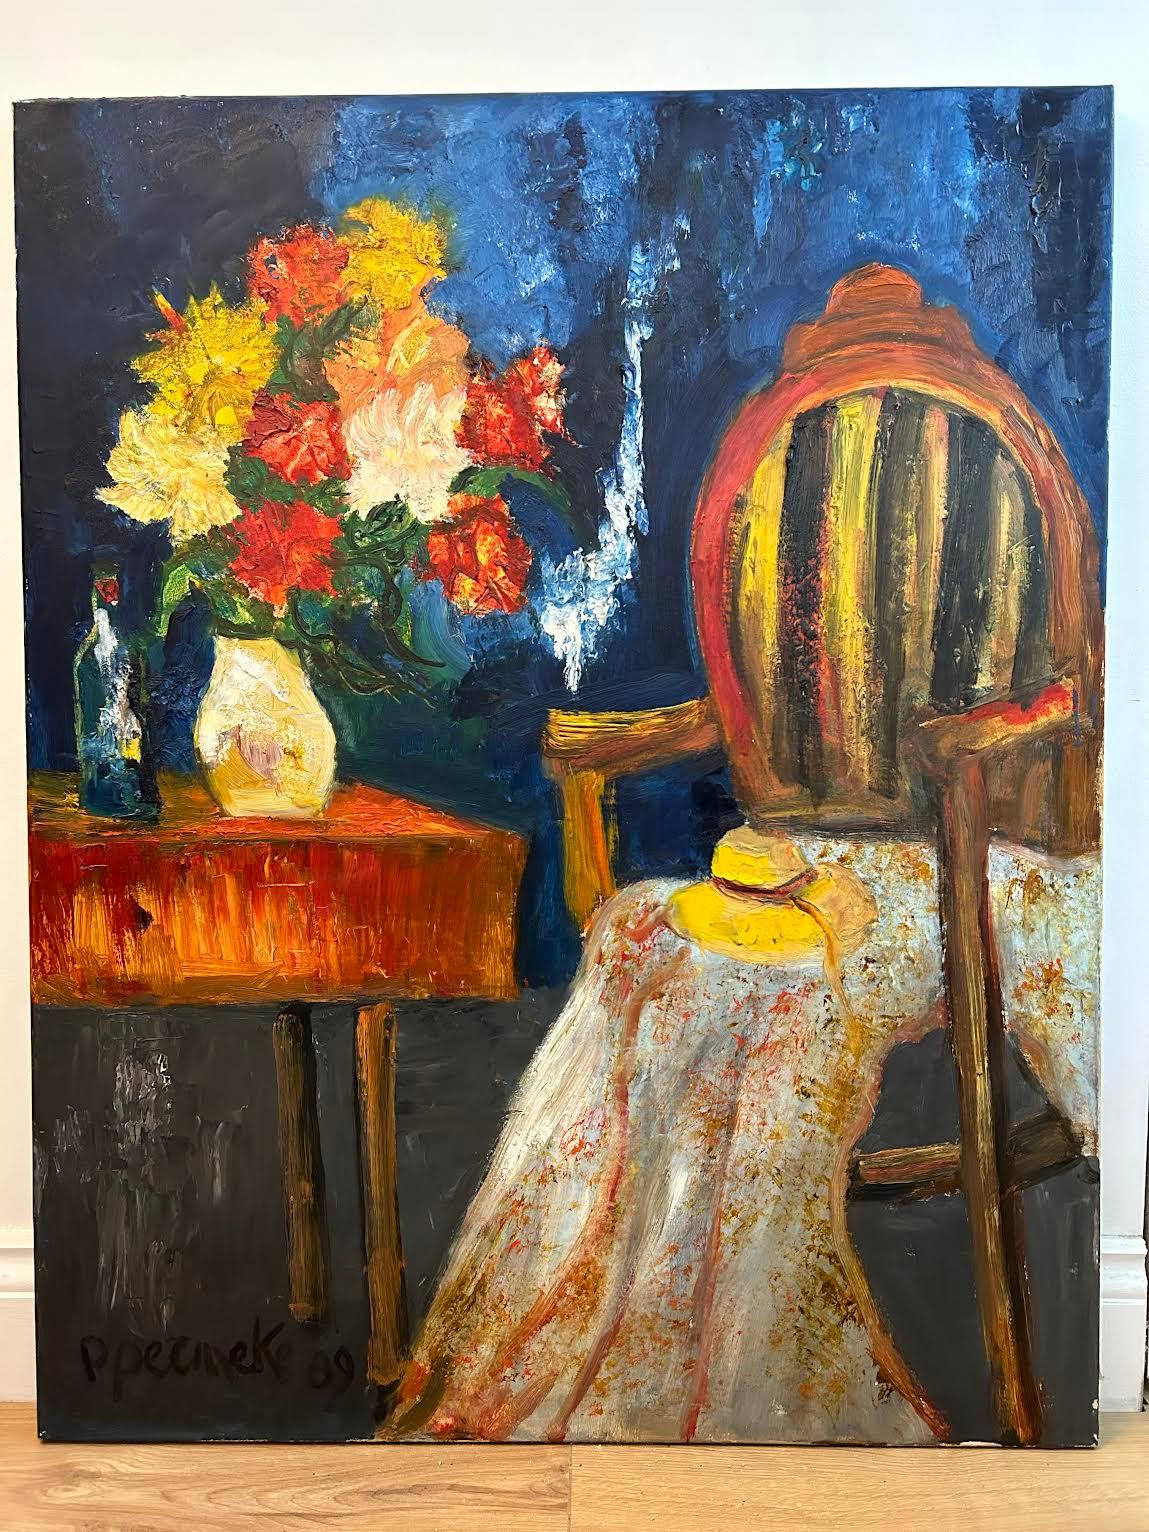 Paul Permeke 1918-1990

Le chapeau sur la chaise

Huile sur toile 

100cm x 80cm

Un superbe exemple de l'œuvre de l'artiste belge Paul Permeke. 
Signé et daté en bas à gauche. 

Très décoratif, avec une utilisation audacieuse des couleurs. 

Paul